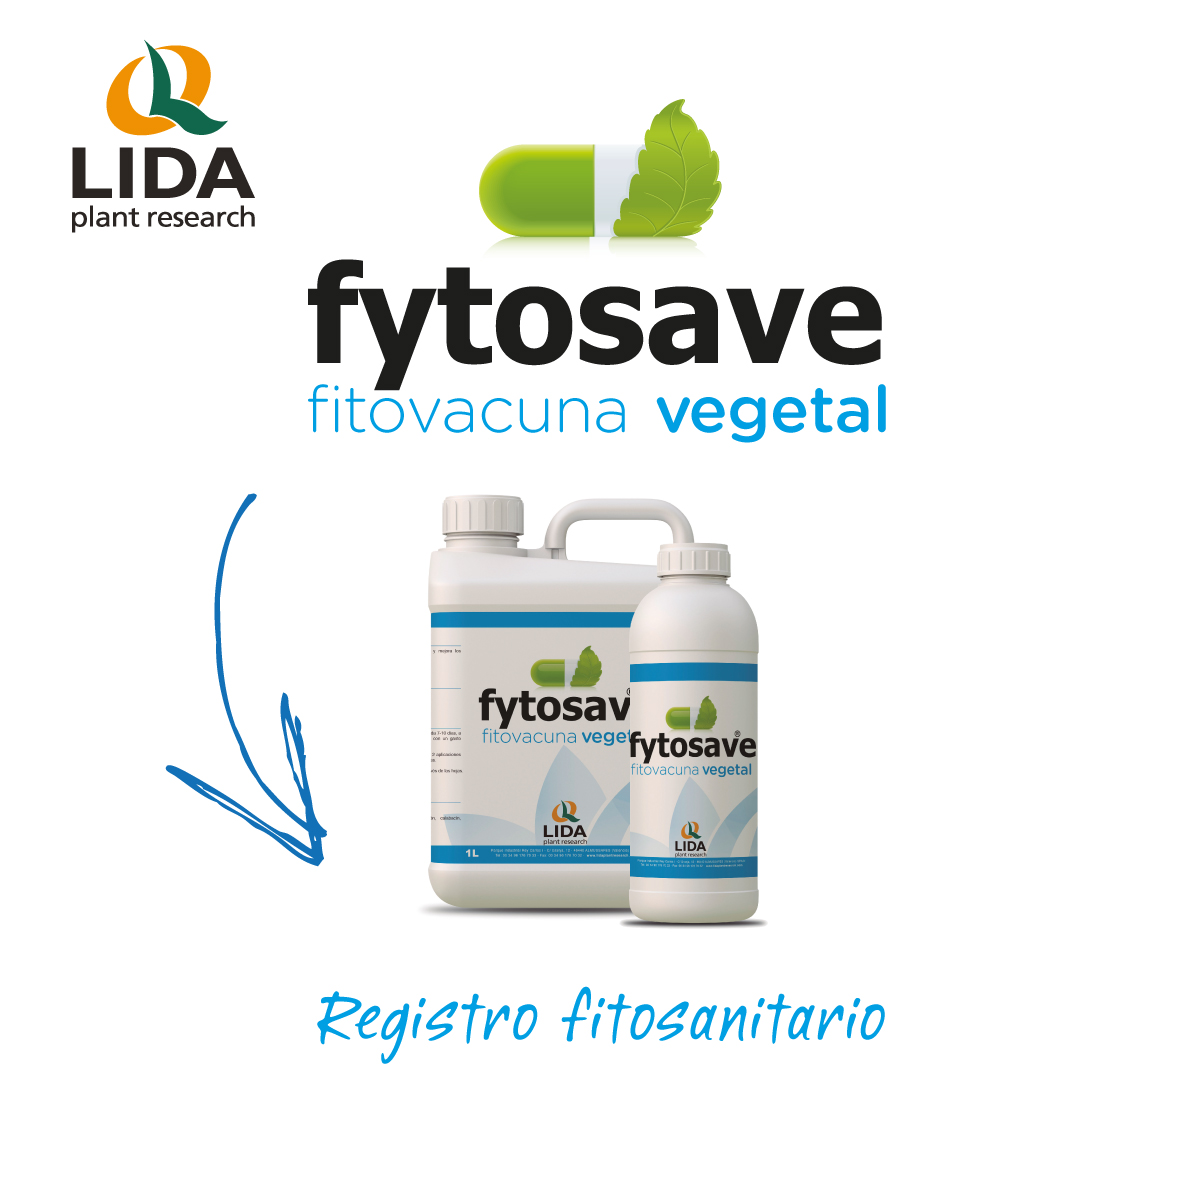 Fytosave logra el registro fitosanitarios